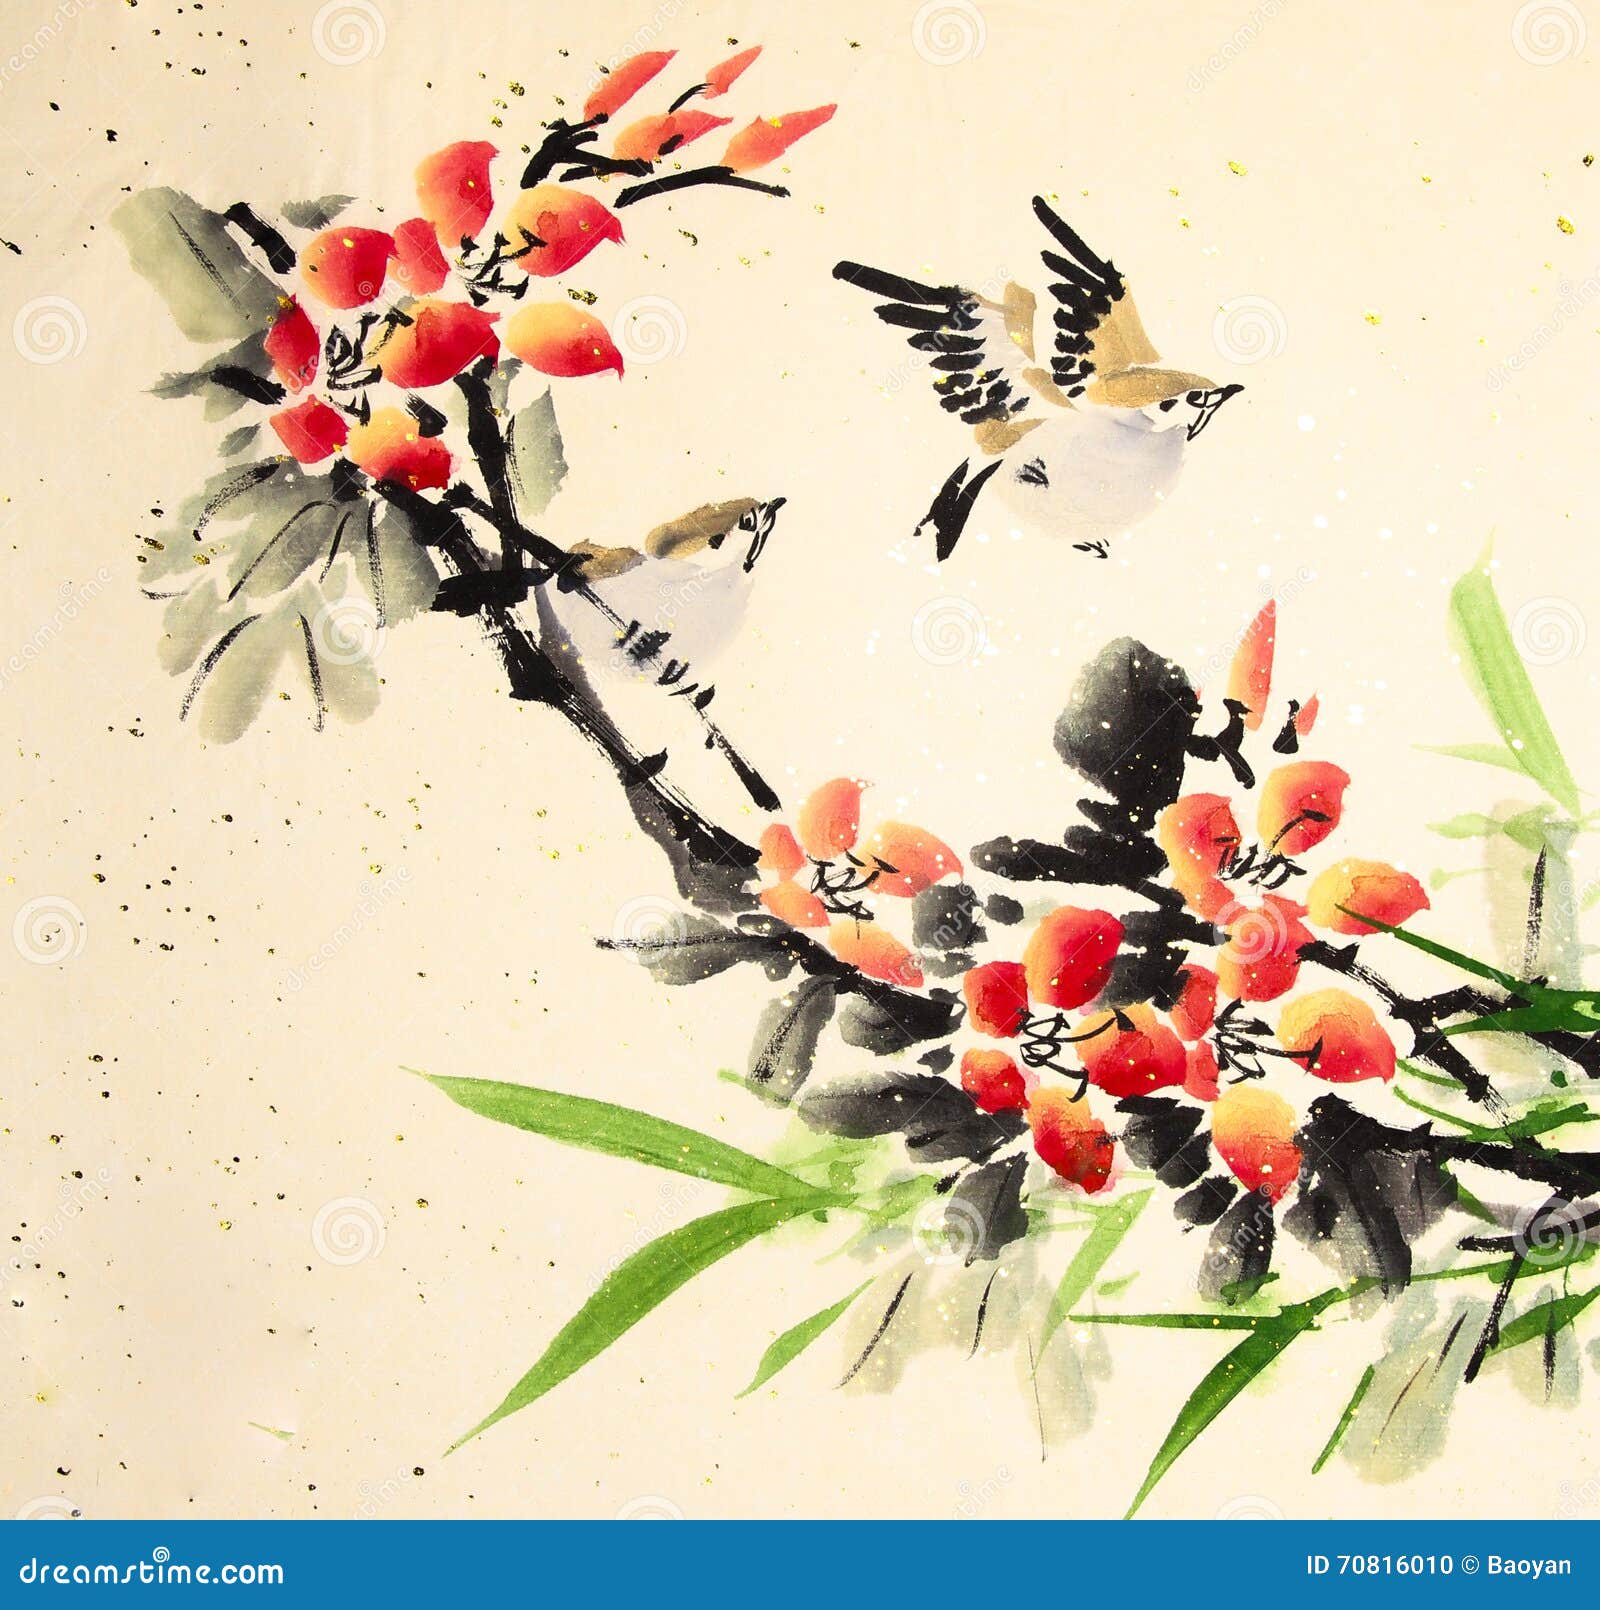 Птица по китайски слушать. Птицы в китайском стиле. Рисунки птиц в китайском стиле. Художник Zeng Xiao Lian птицы и цветы. Китайские птички картинки.